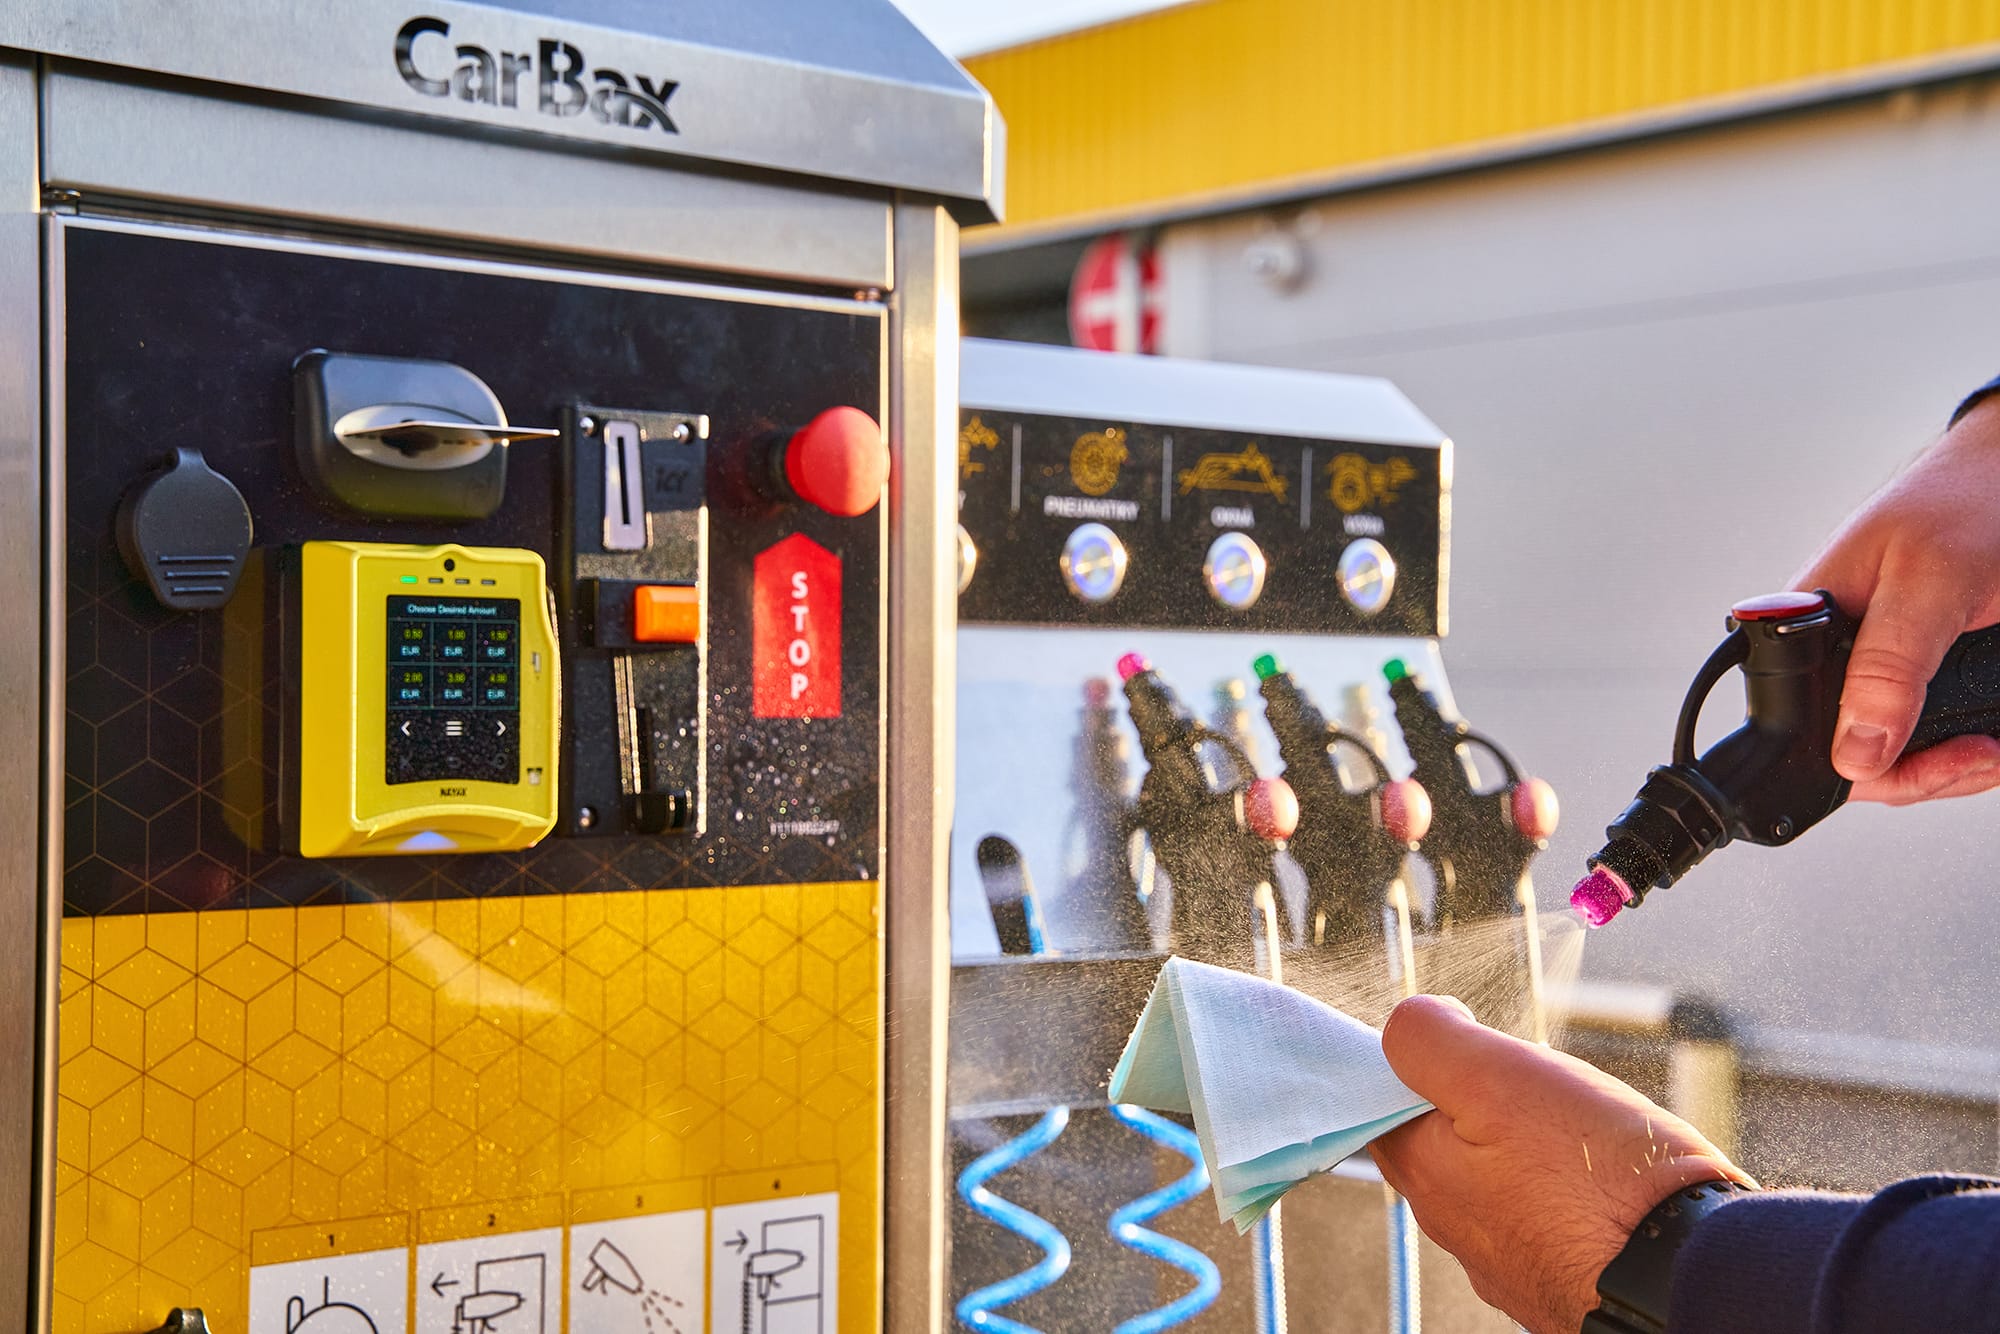 Predstavujeme nové samoobslužné dávkovače CarBax Dispenser 4 a CarBax Towel Dispenser 